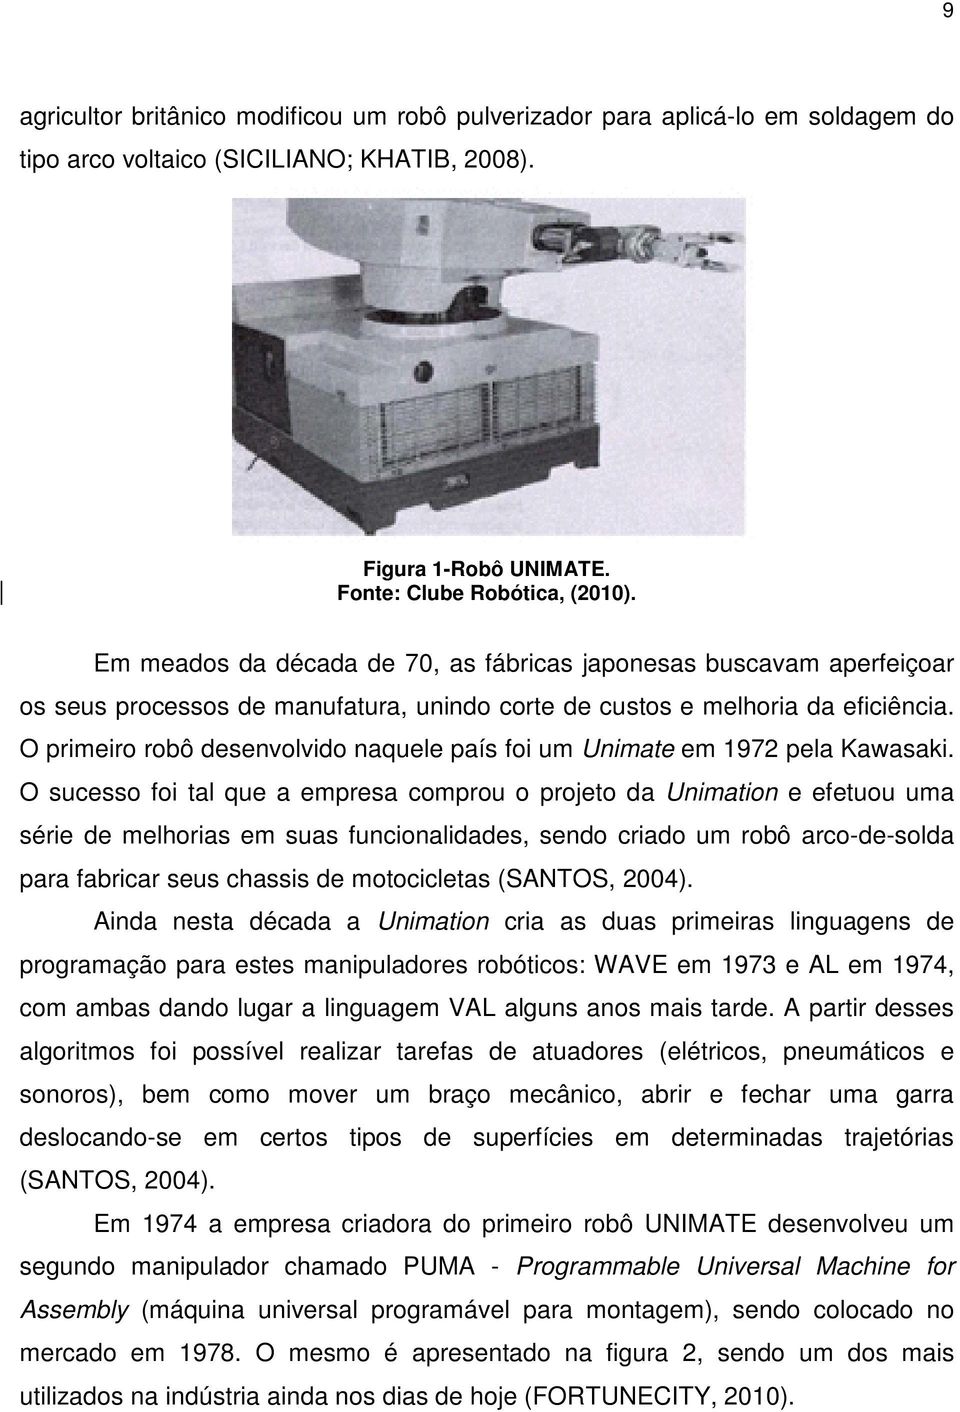 O primeiro robô desenvolvido naquele país foi um Unimate em 1972 pela Kawasaki.